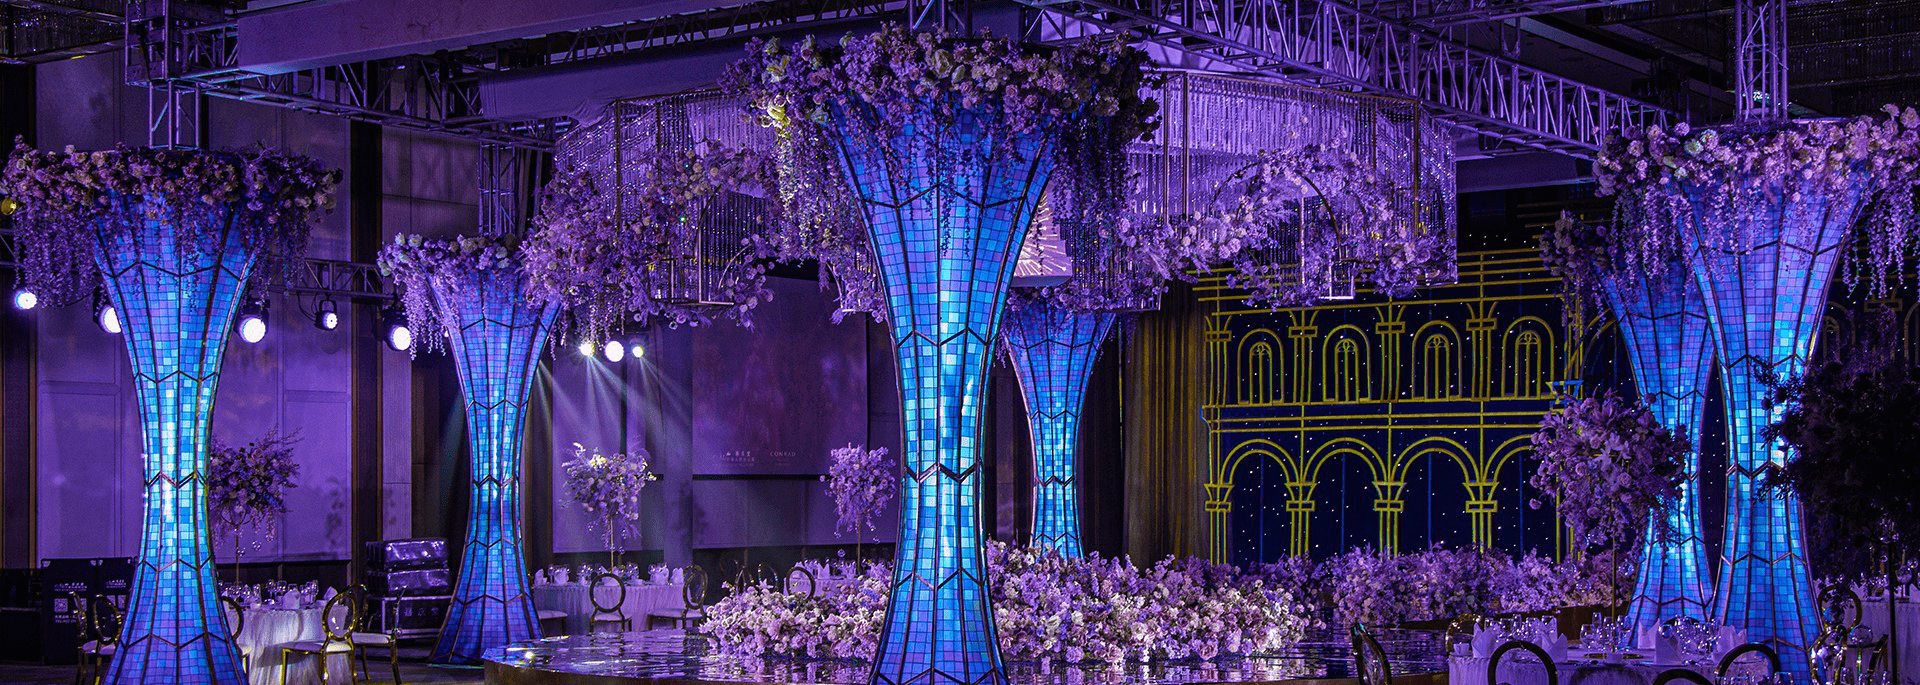 天津康莱德酒店举办"花漾"主题婚礼展,呈现梦幻婚礼殿堂